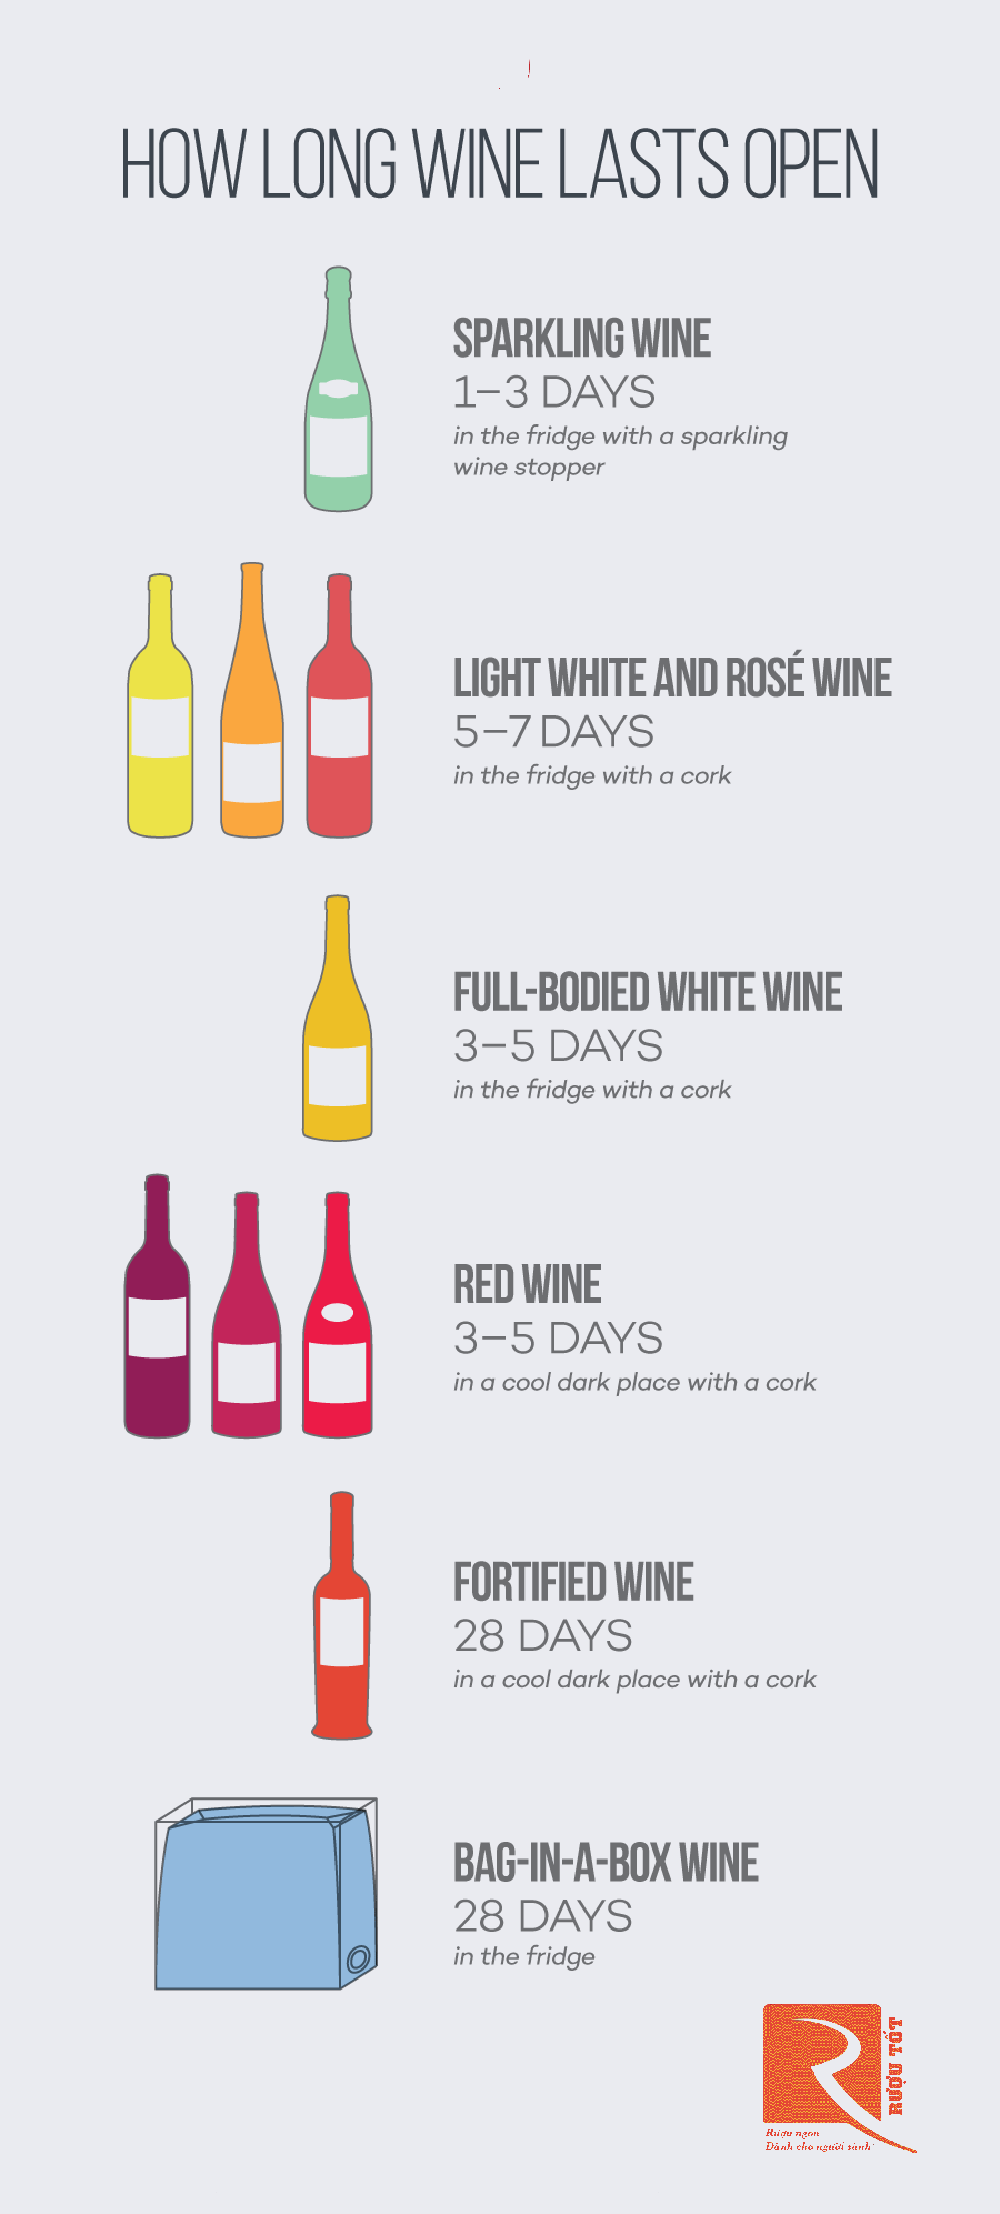 Rượu vang giữ được bao lâu sau khi mở nắp? Bạn có tự hỏi?